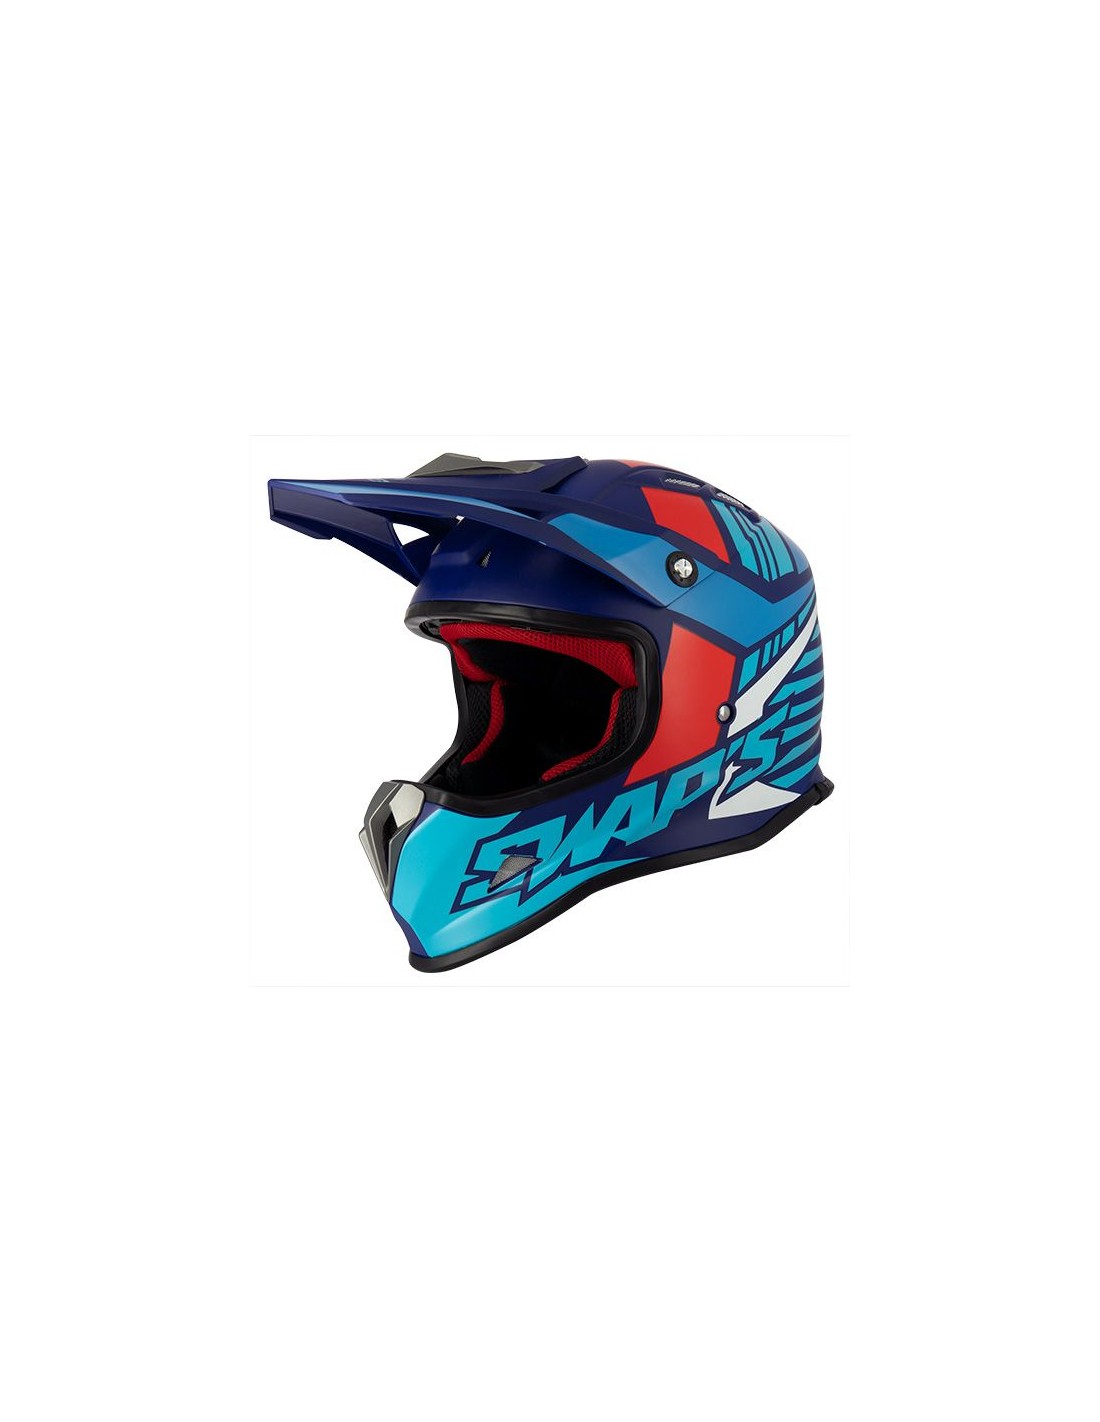 Casque Cross enfant SWAPS - Bleur Rouge Blanc Moto et Quad Helmet ATV